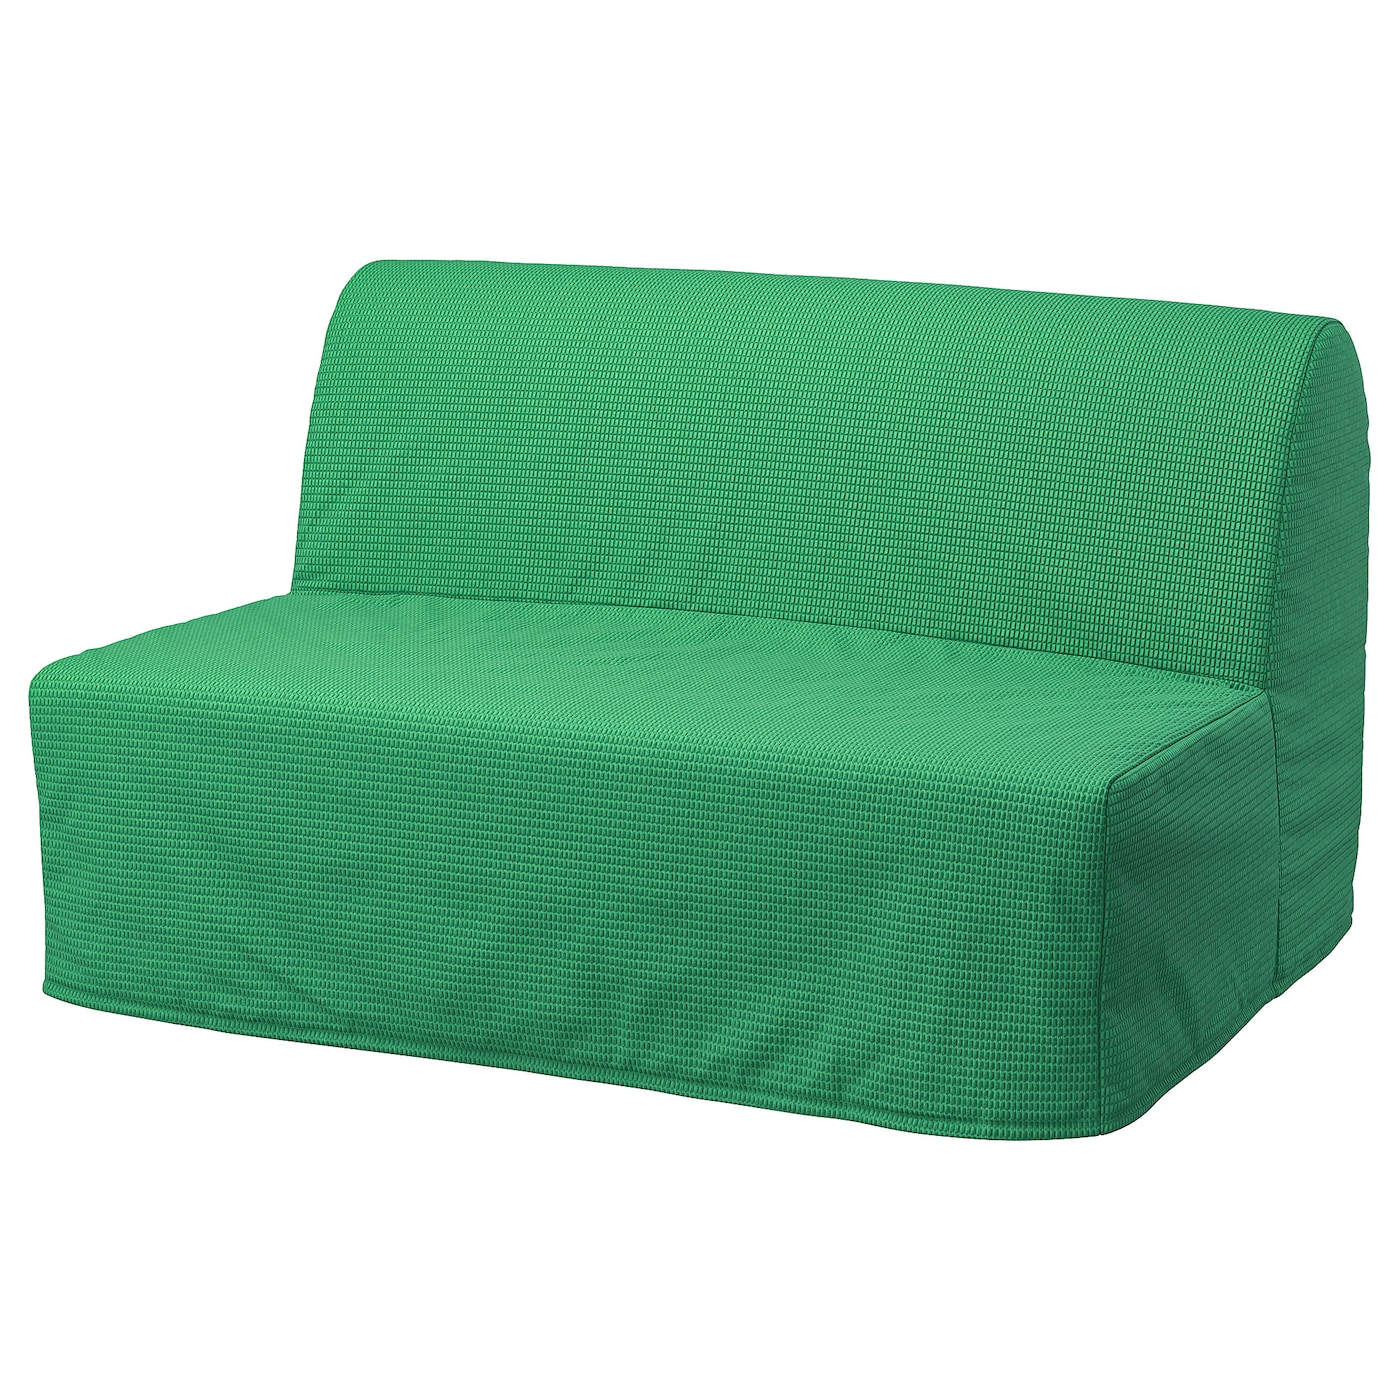 мультяшный матрас ленивый диван кровать подходит для детей татами маты креативный маленький диван кровать стул современная мебель для ЛИКСЕЛЕ МУРБО 2 раскладных дивана-кровати, Вансбро ярко-зеленый LYCKSELE MURBO IKEA